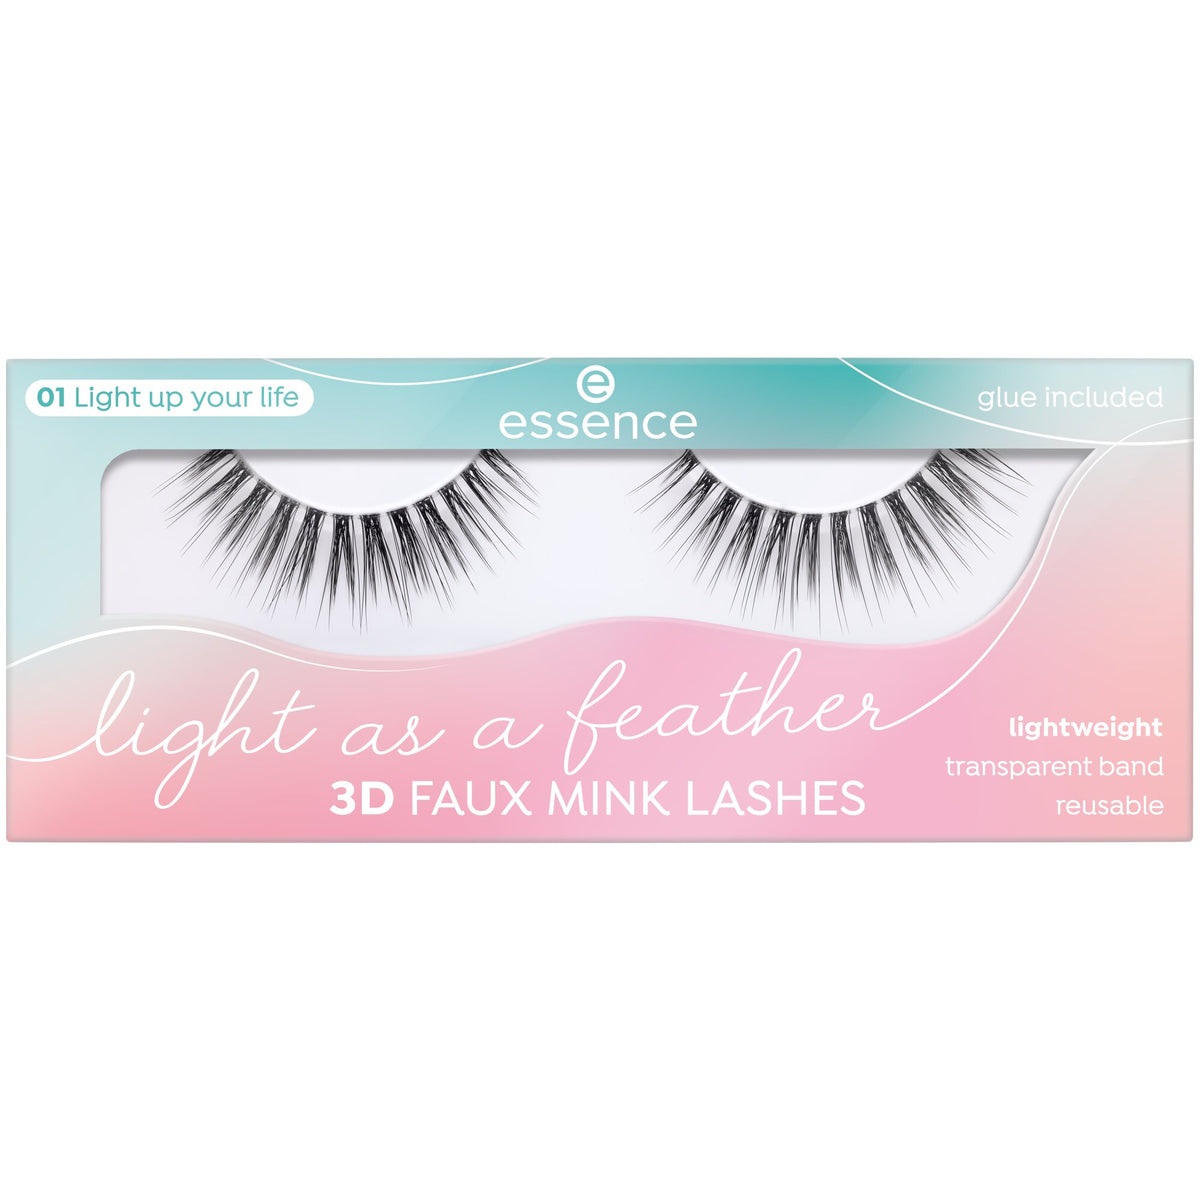 essence Light as a feather 3D faux mink lashes – LEGiT